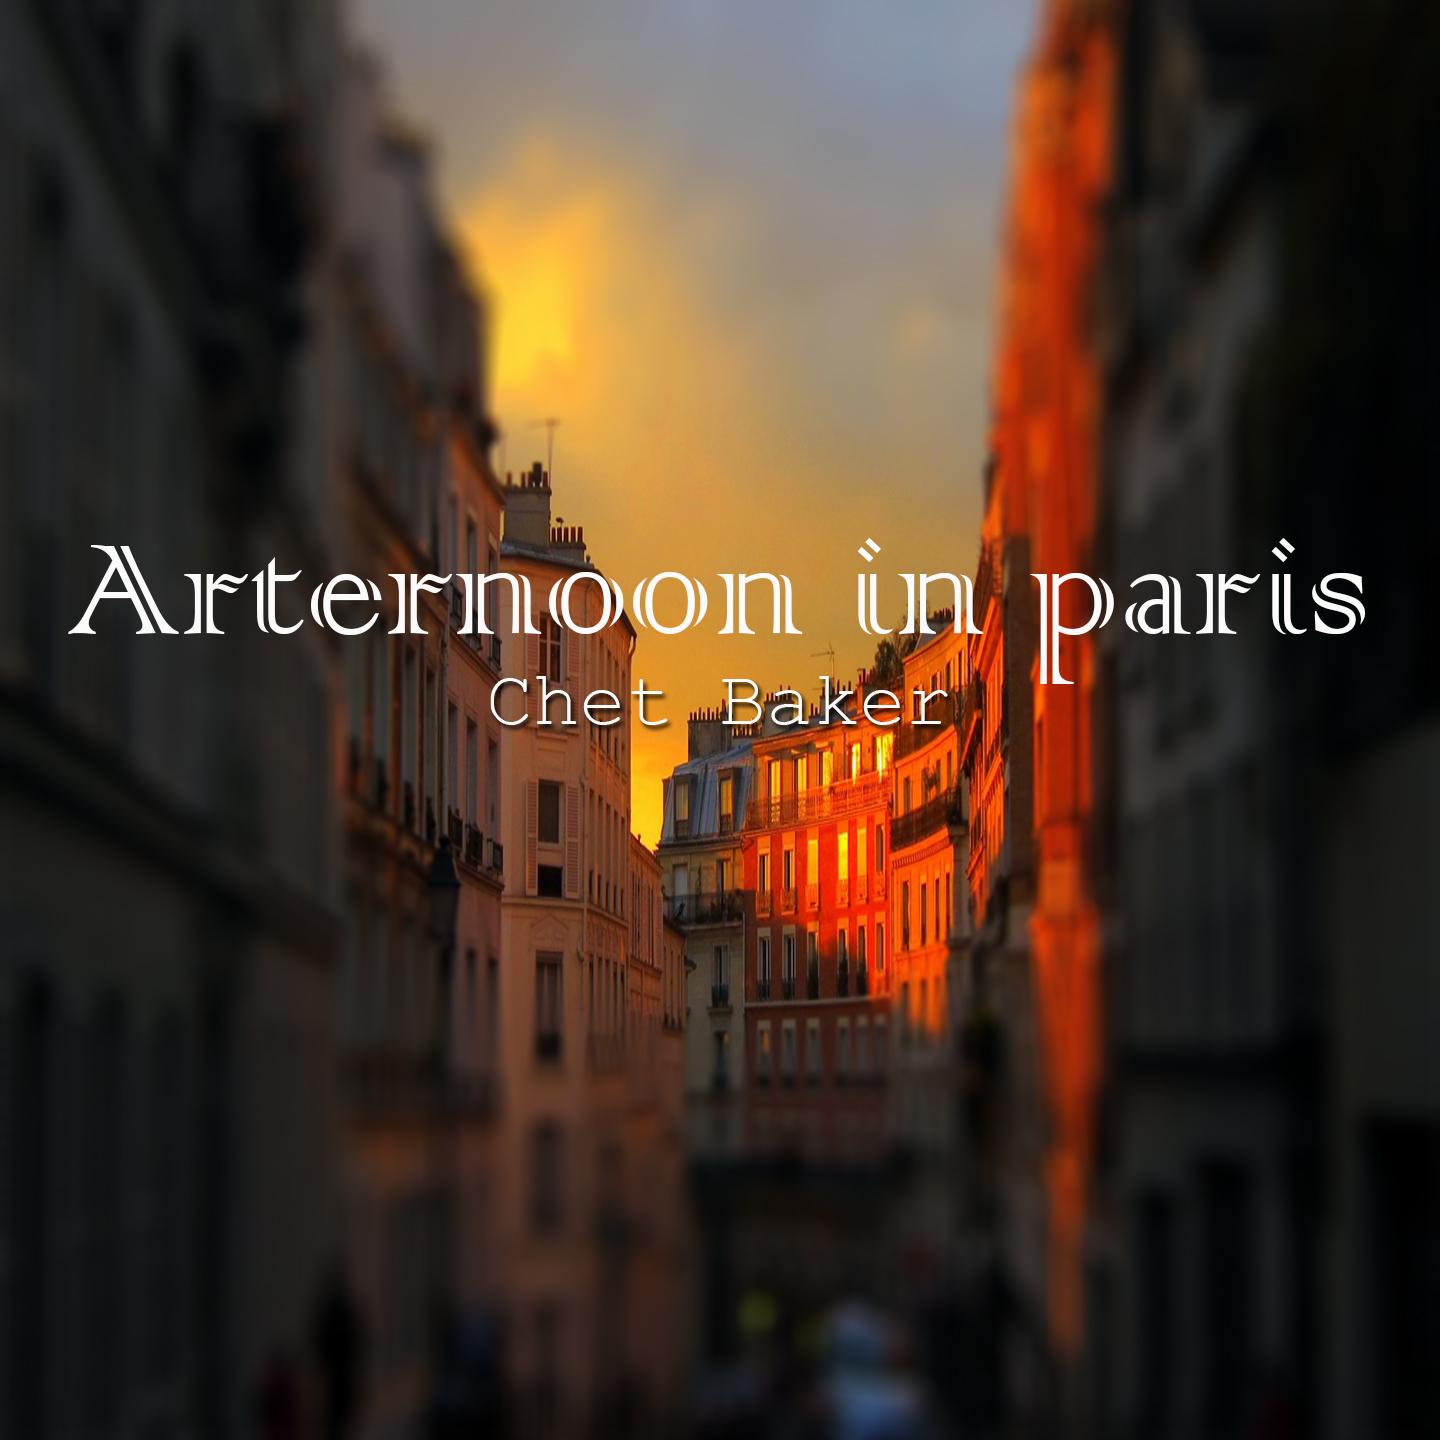 Afternoon in paris